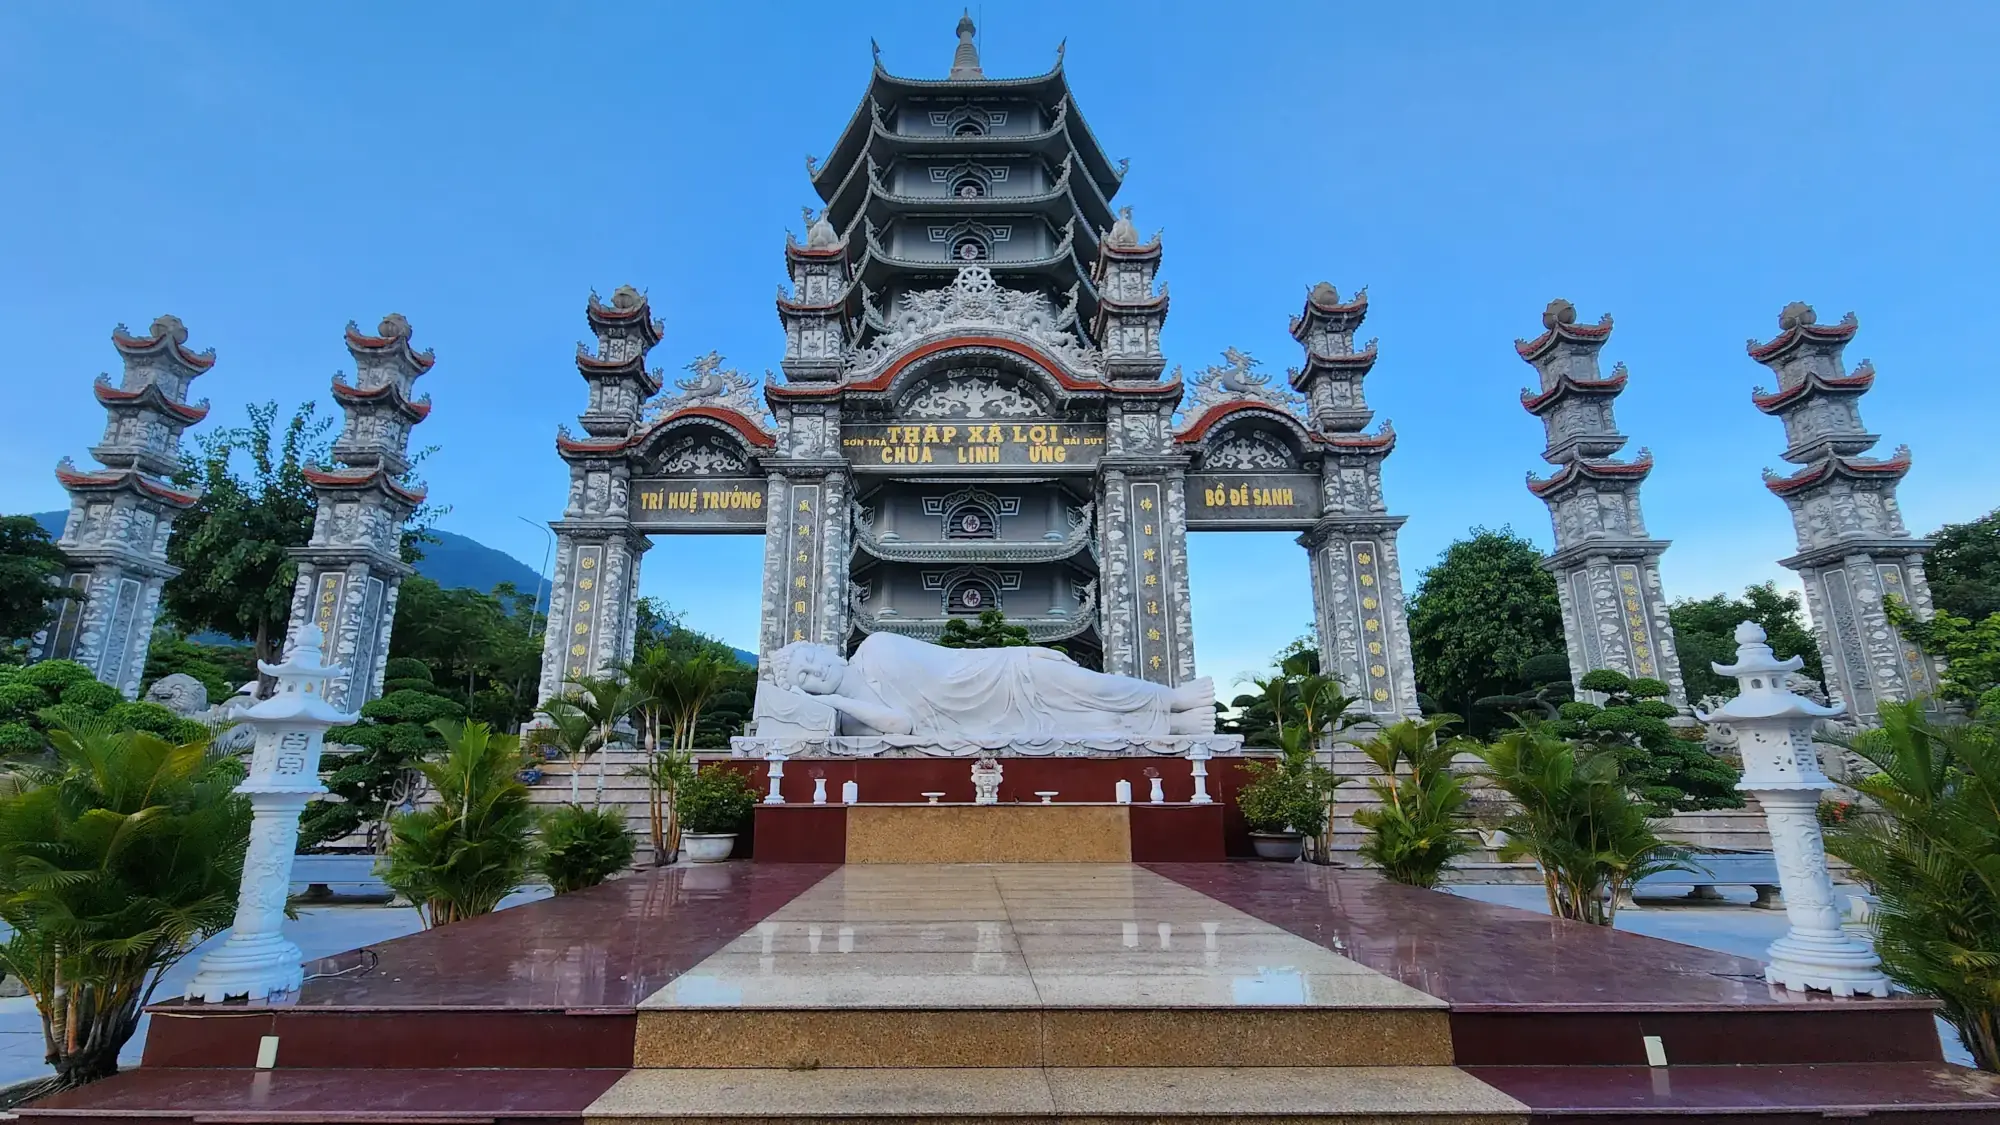 Linh Ung Pagoda - Stupa